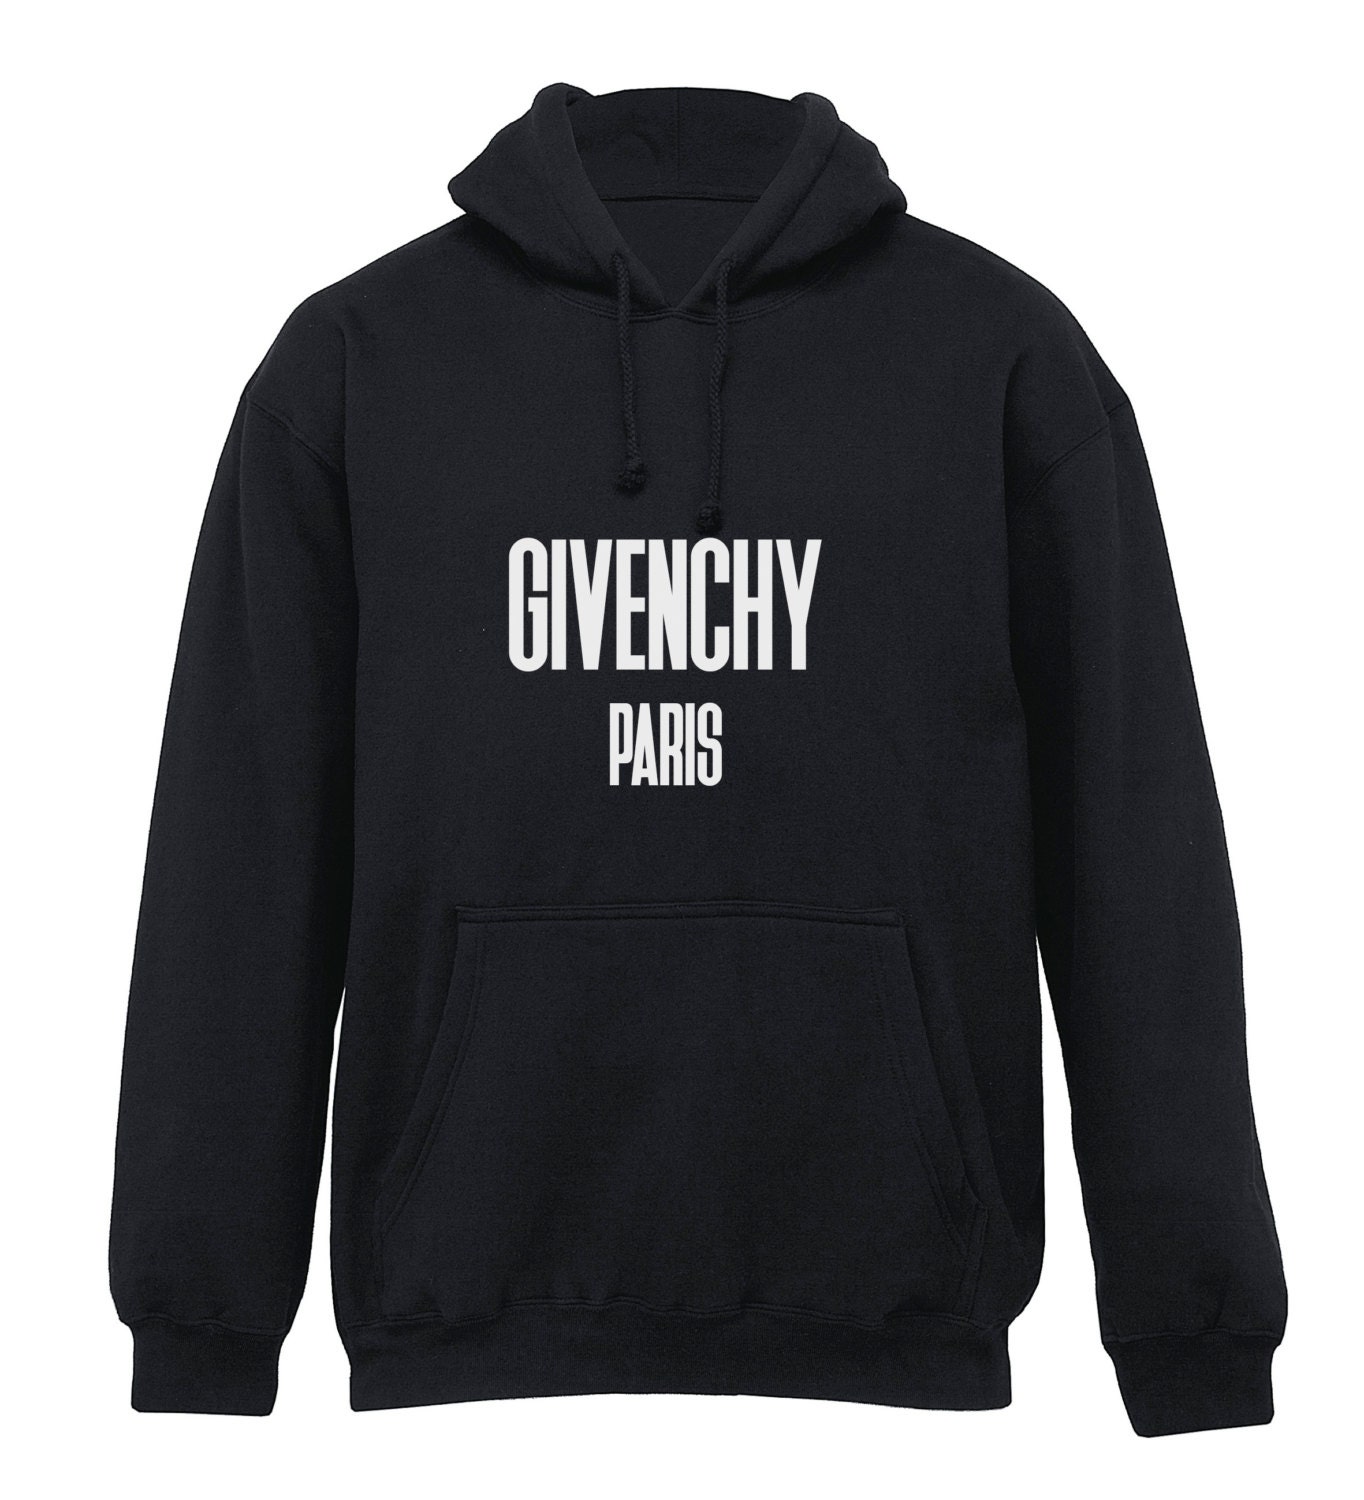 Givenchy Paris Printed Hoodie